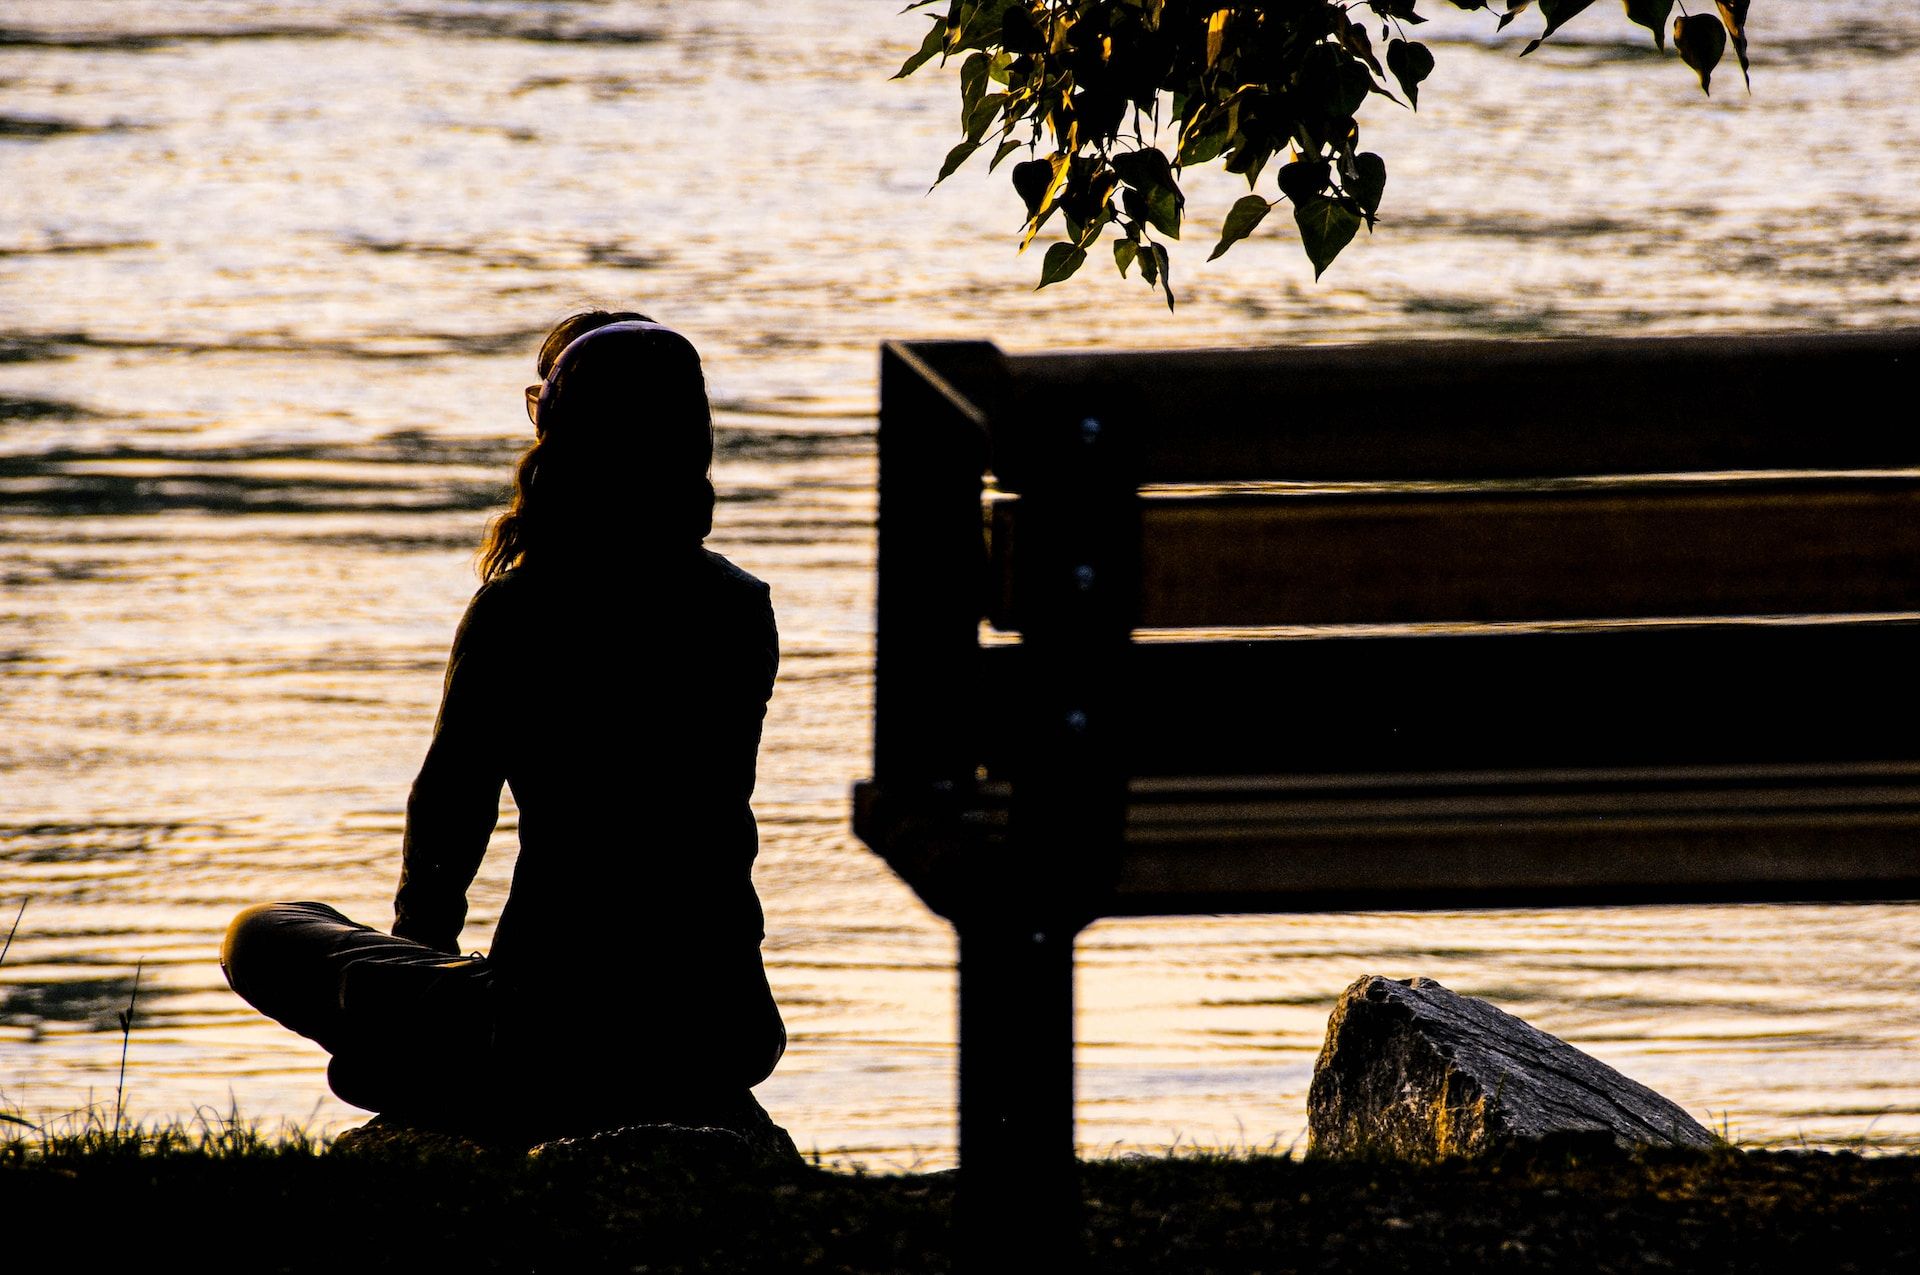 Une femme seule, assise sur le bord d'une rivière au coucher du soleill, un casque sur les aoreilles - Photo by Toni Reed on https://unsplash.com/fr/photos/silhouette-dune-personne-assise-sur-un-banc-pres-dun-plan-deau-pendant-la-journee-BmwEhjQBmyU